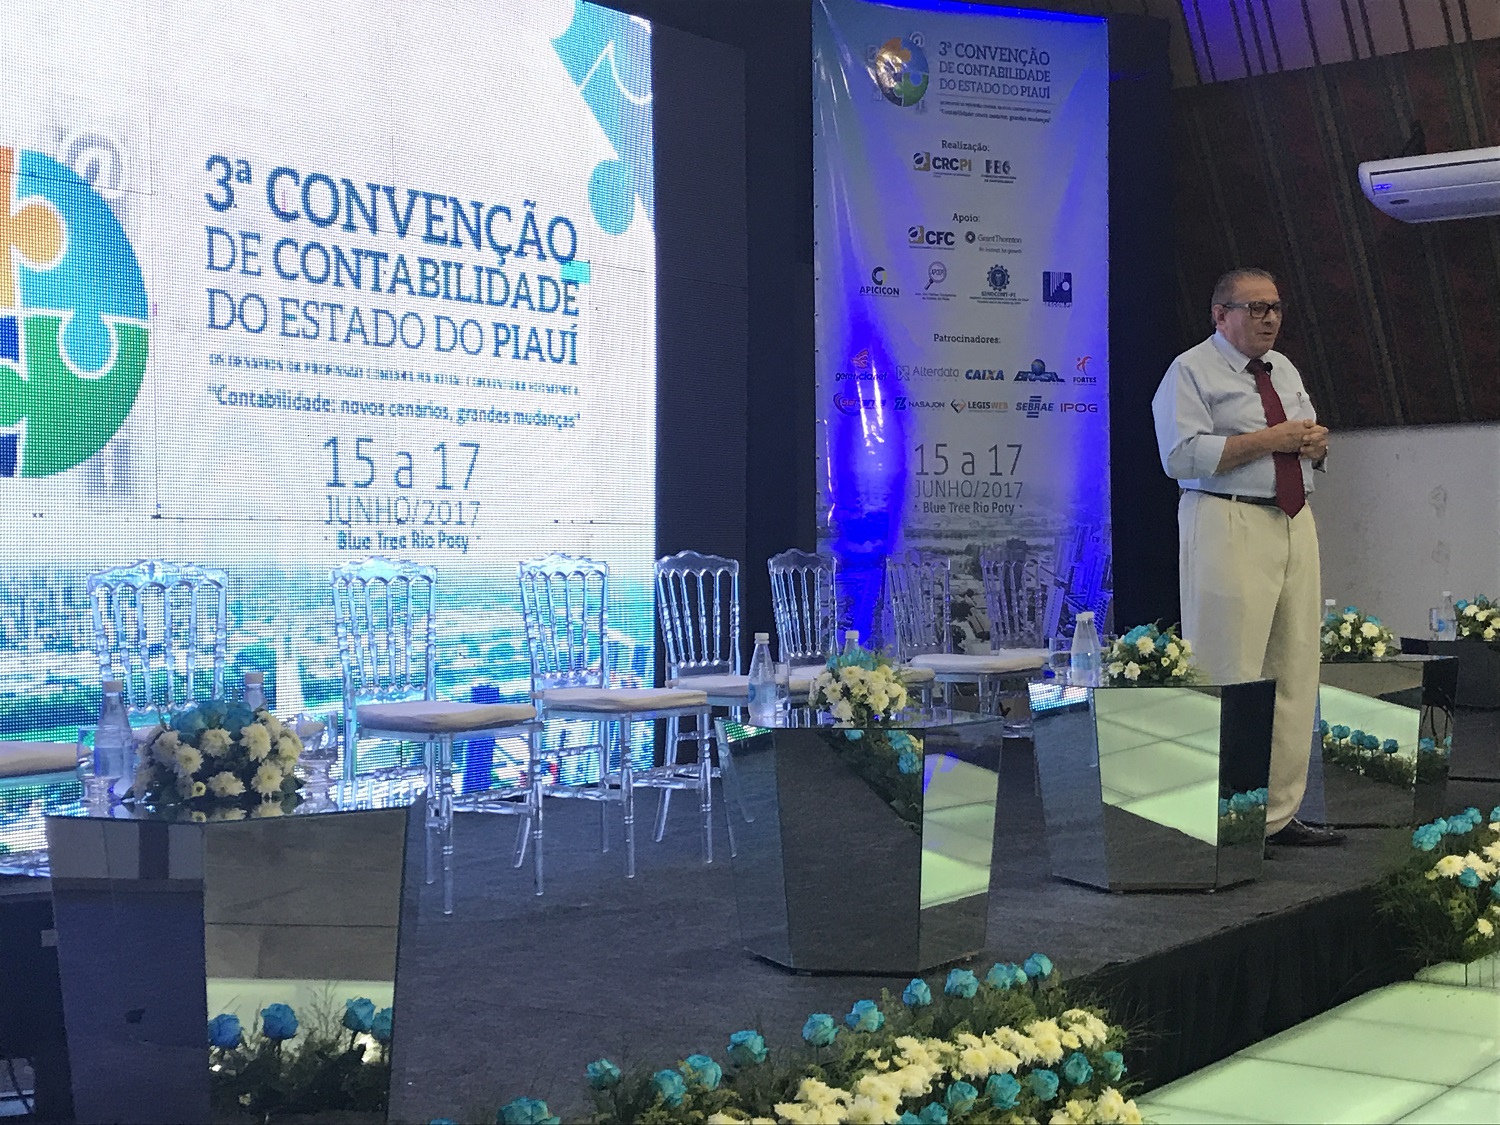 Valdeci Cavalcante ministra Palestra na Convenção de Contabilidade em Teresina